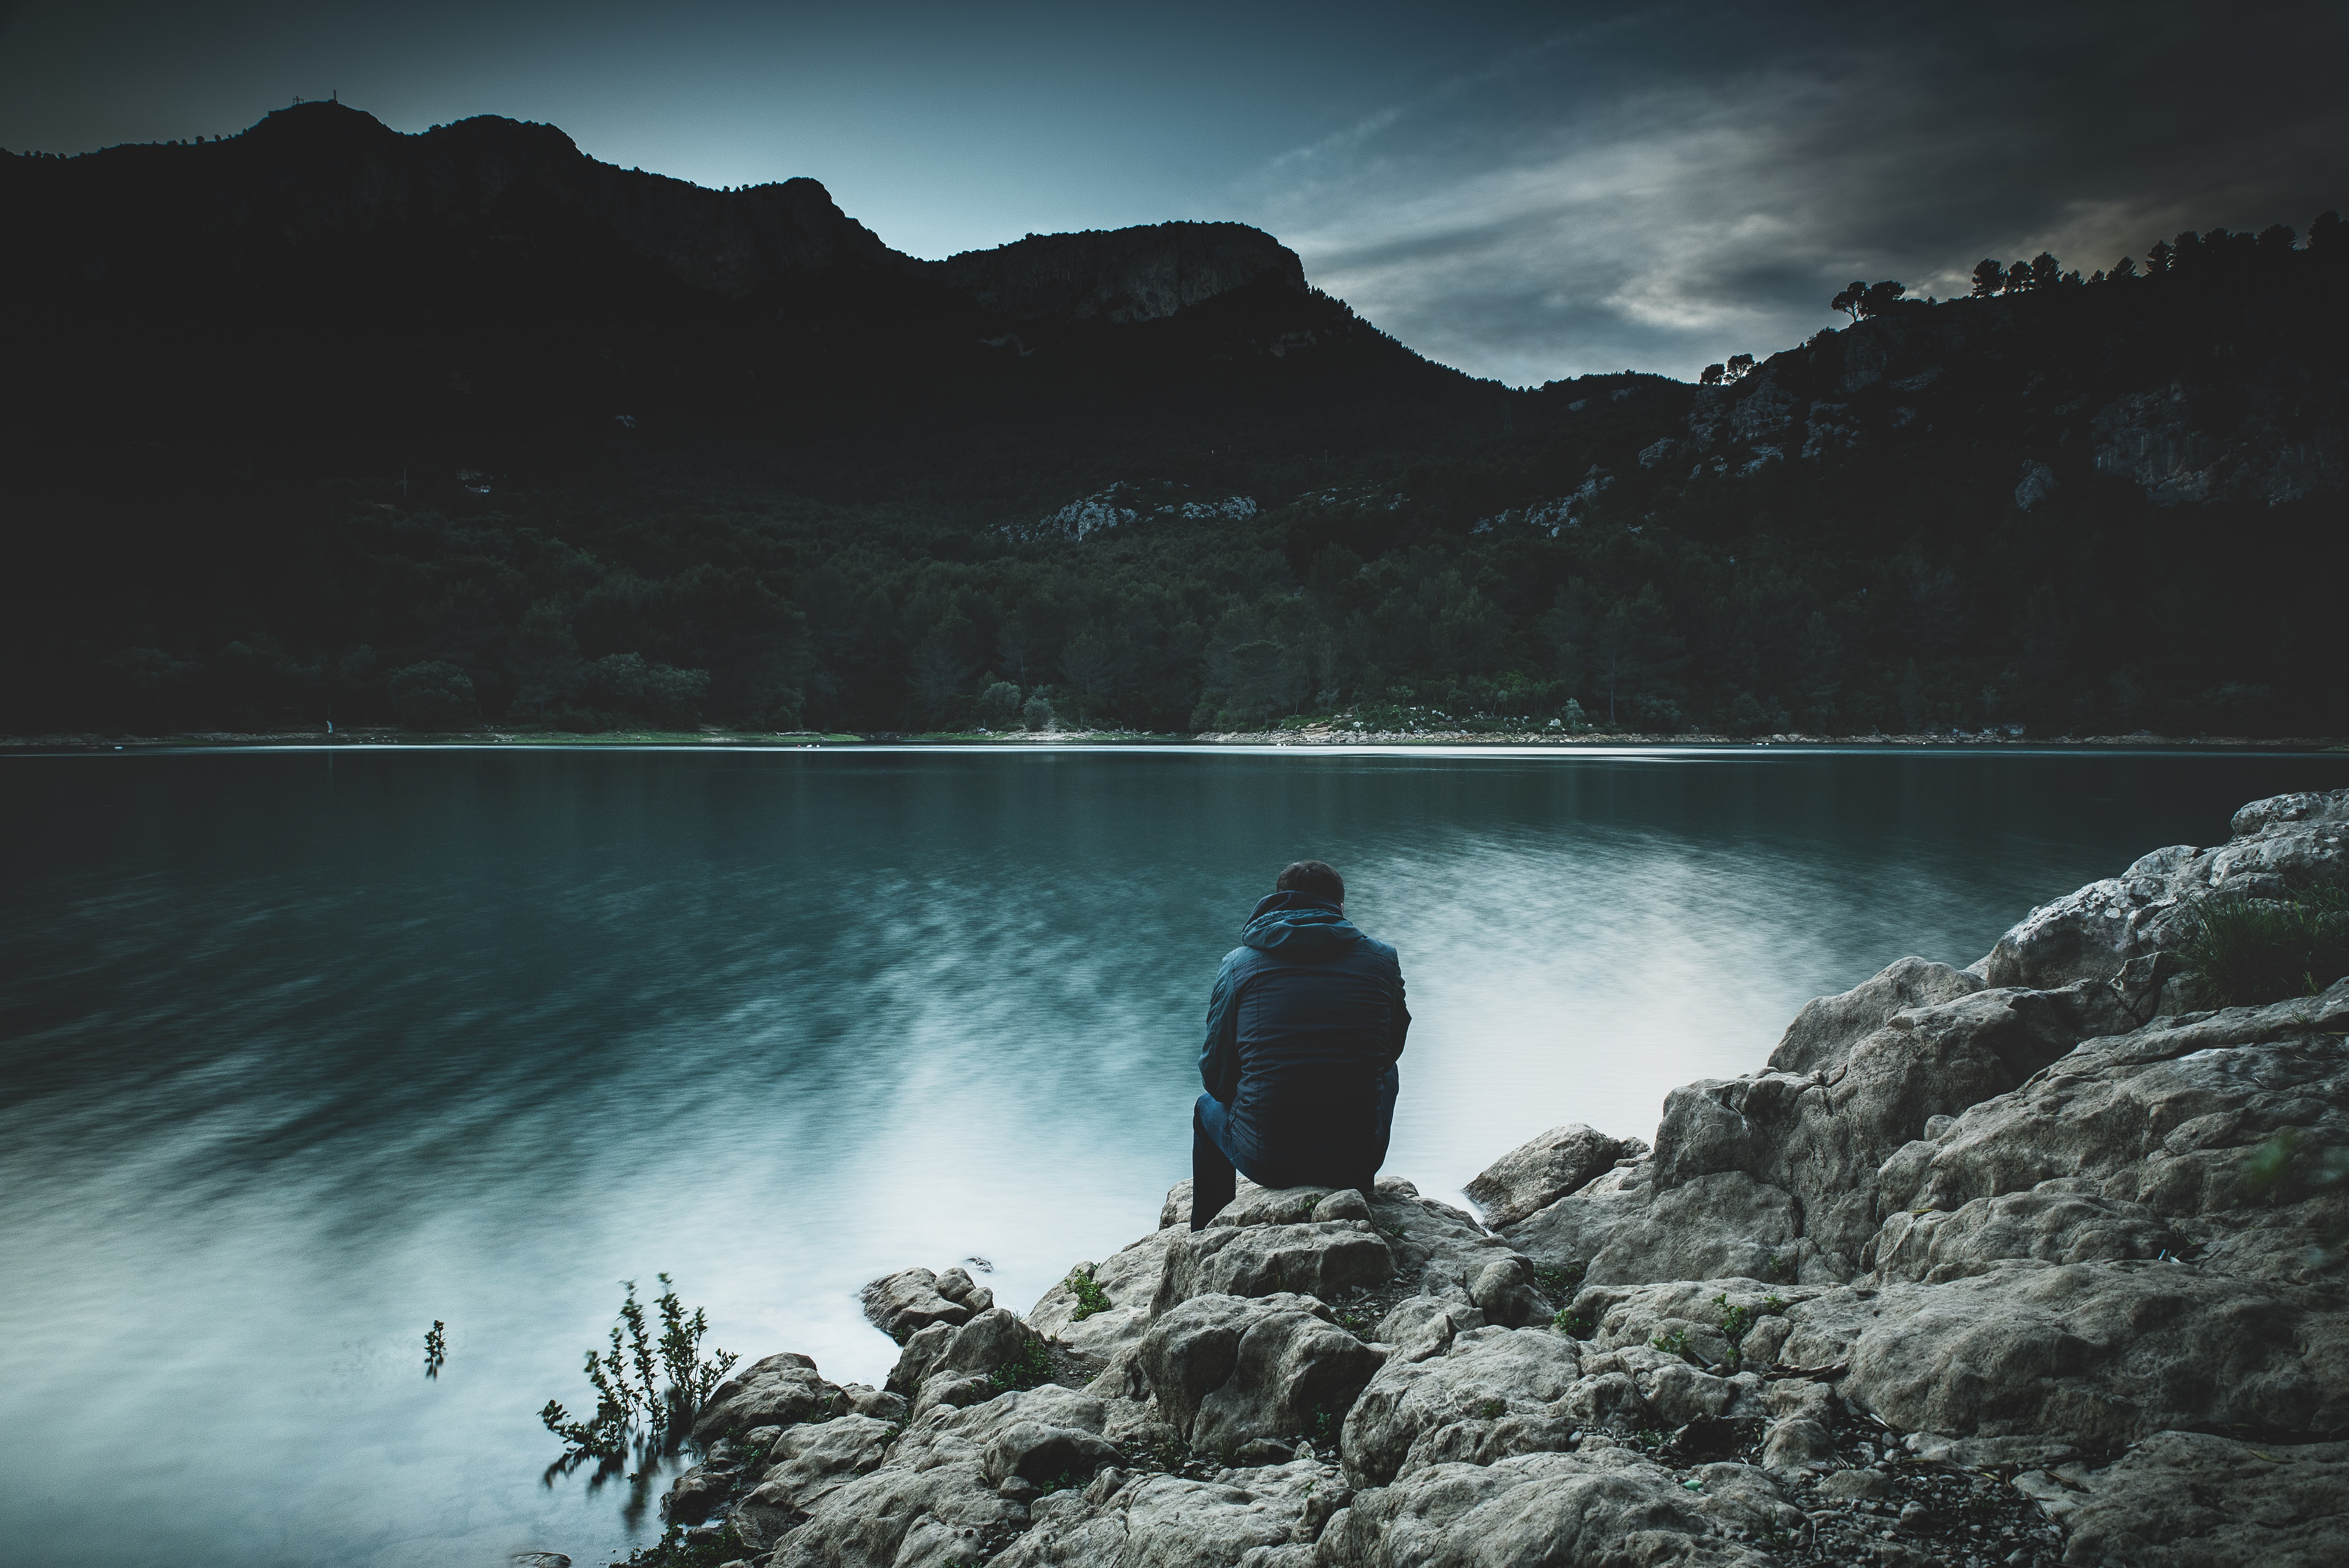 Man sitting at lake near mountains